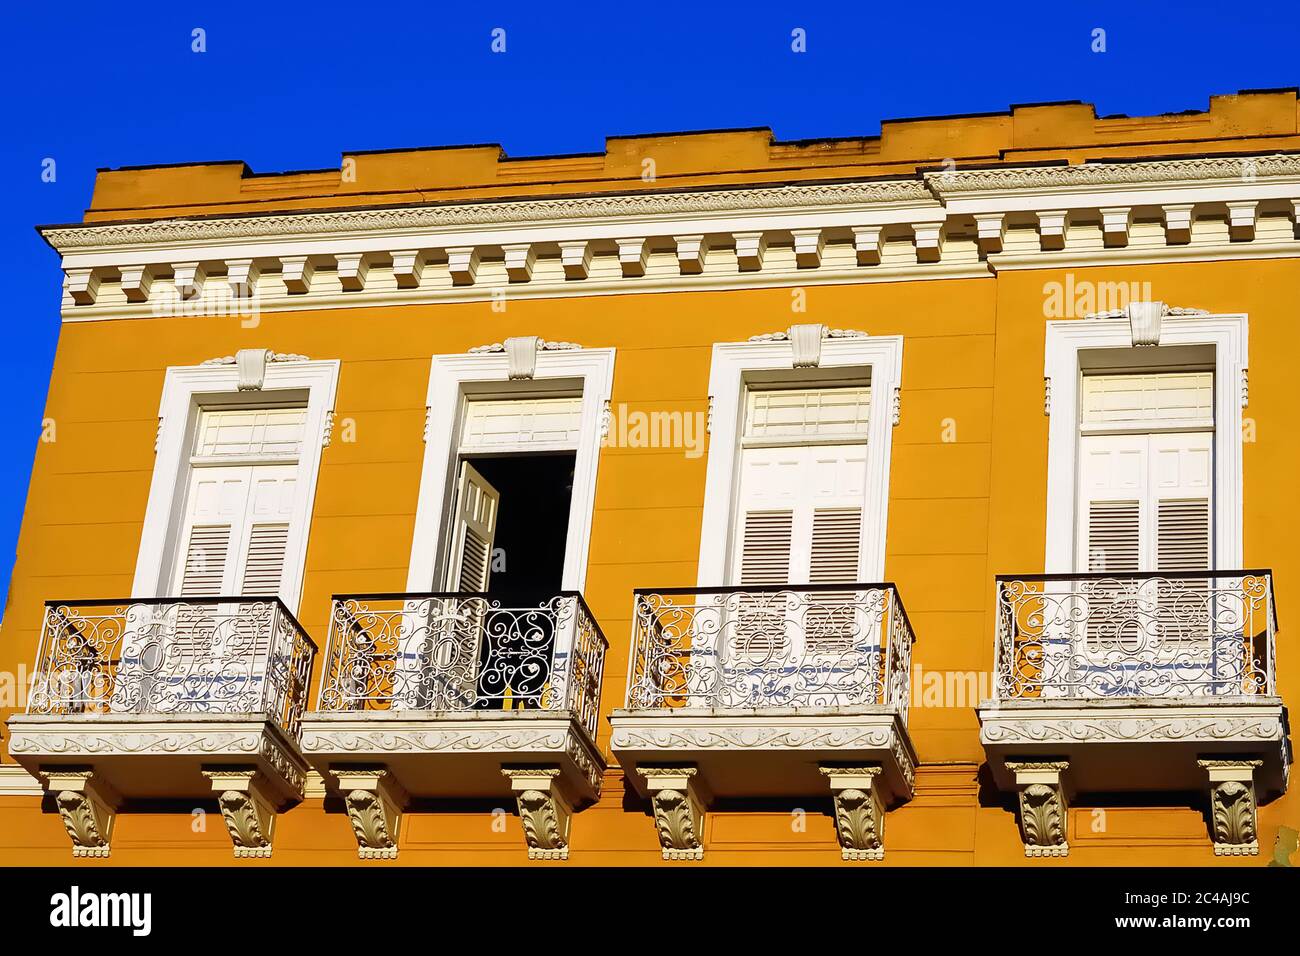 Bâtiment colonial jaune avec balcons blancs à Sancti Spiritus, Cuba Banque D'Images